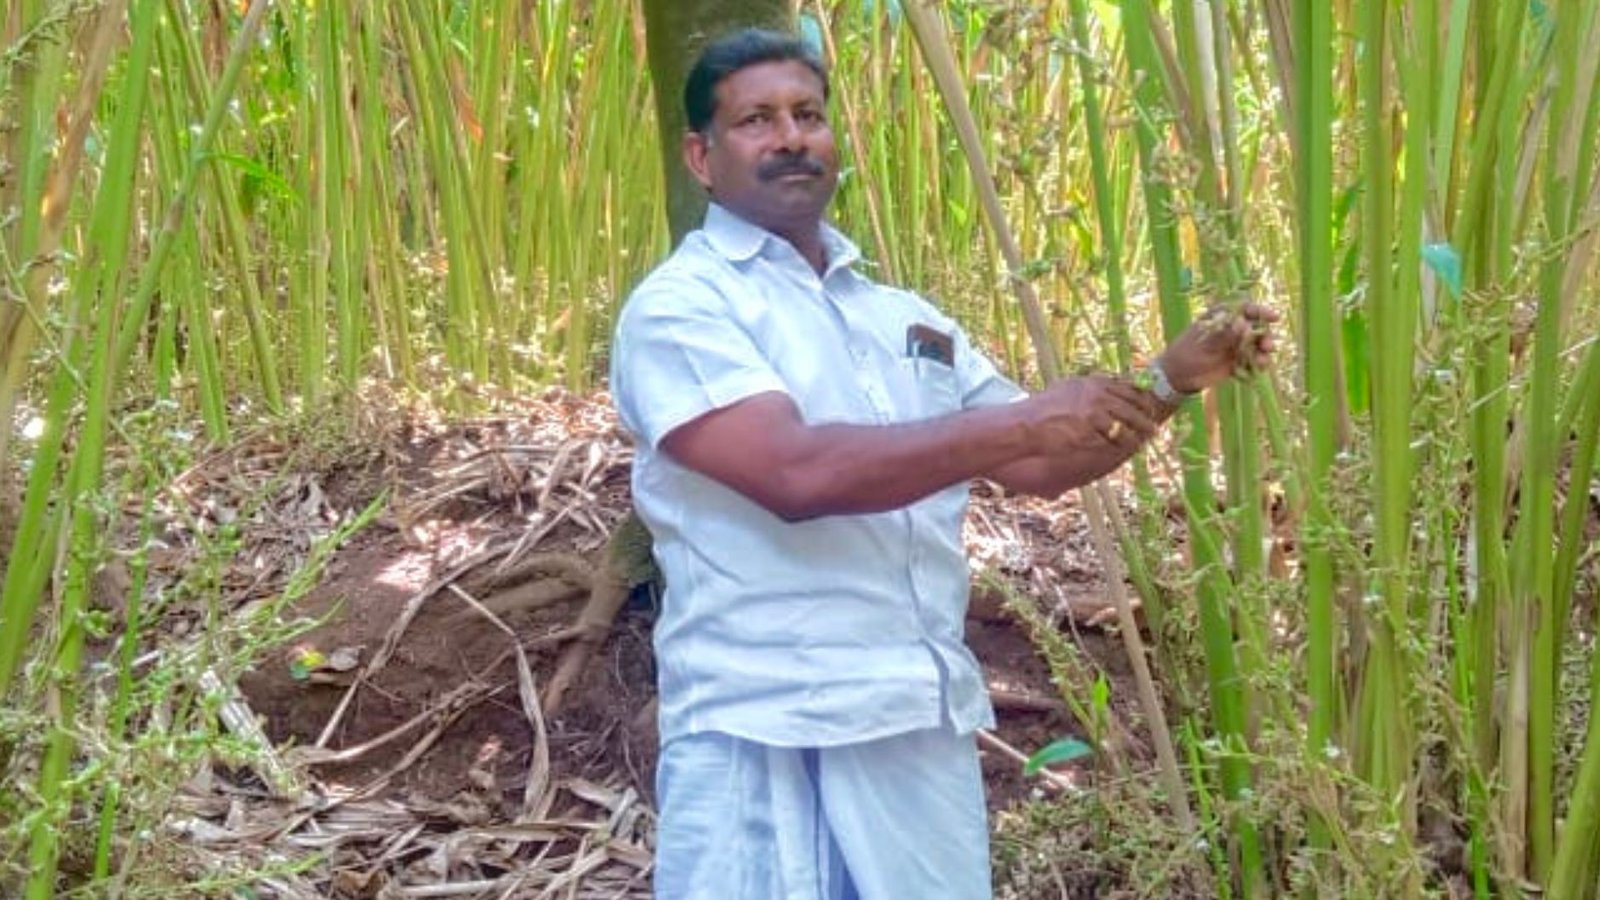 Mackal Joseph at his farm in Idukki, Kerala. I